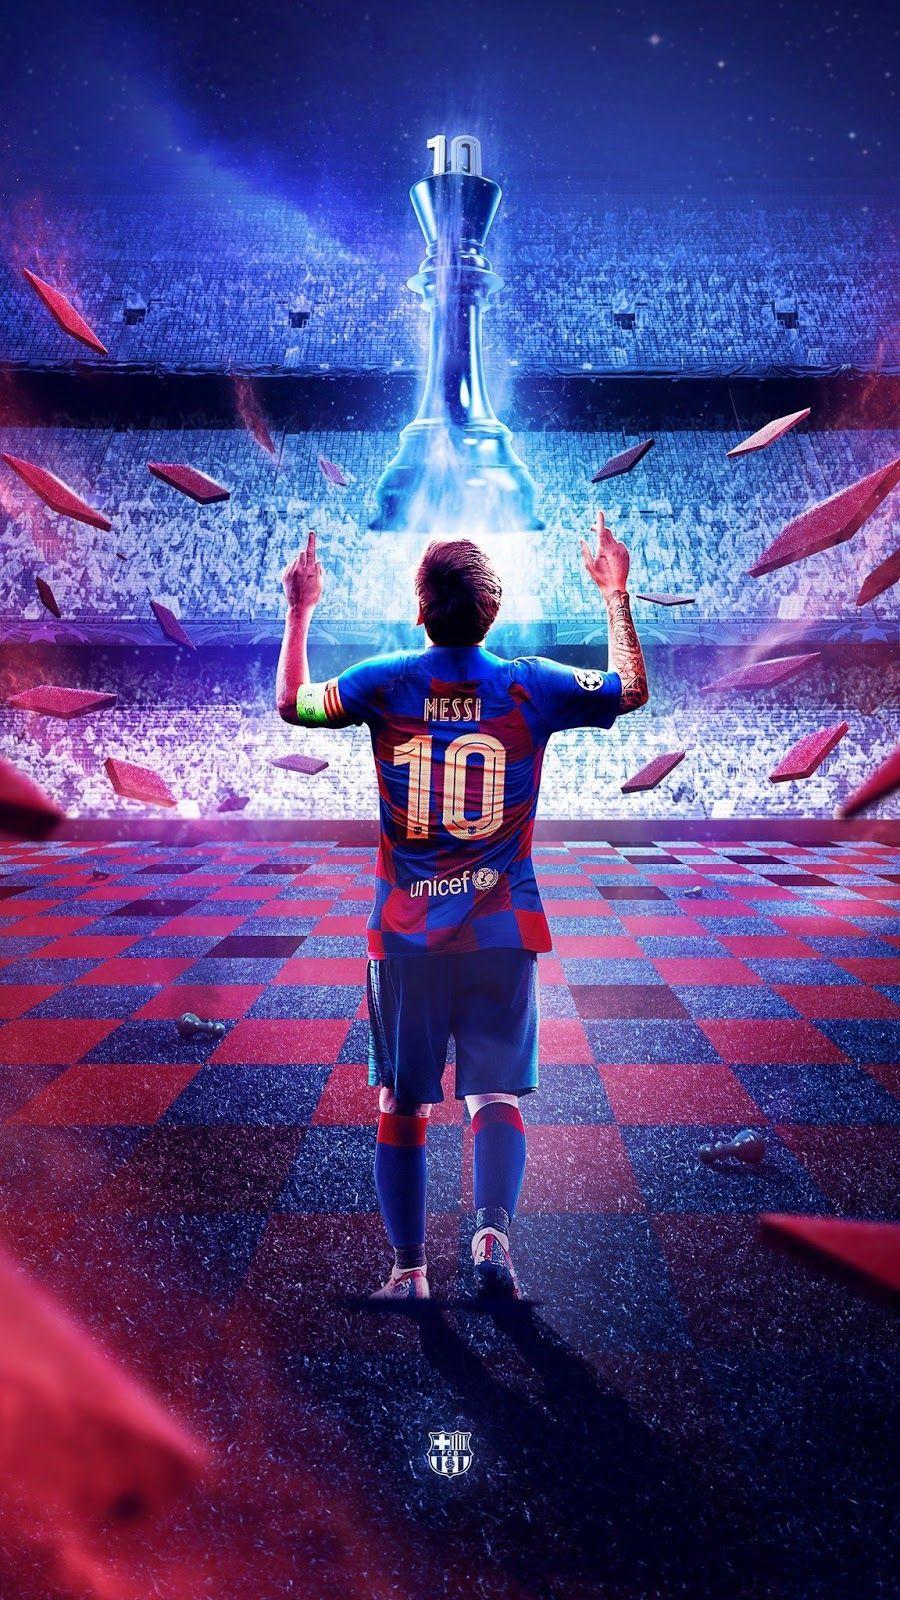 Năm 2020 đã đến và Messi vẫn tiếp tục tỏa sáng như thường lệ. Thưởng thức hình ảnh của anh ta để nhận thấy sự phát triển và sự trưởng thành của một cầu thủ tuyệt vời.